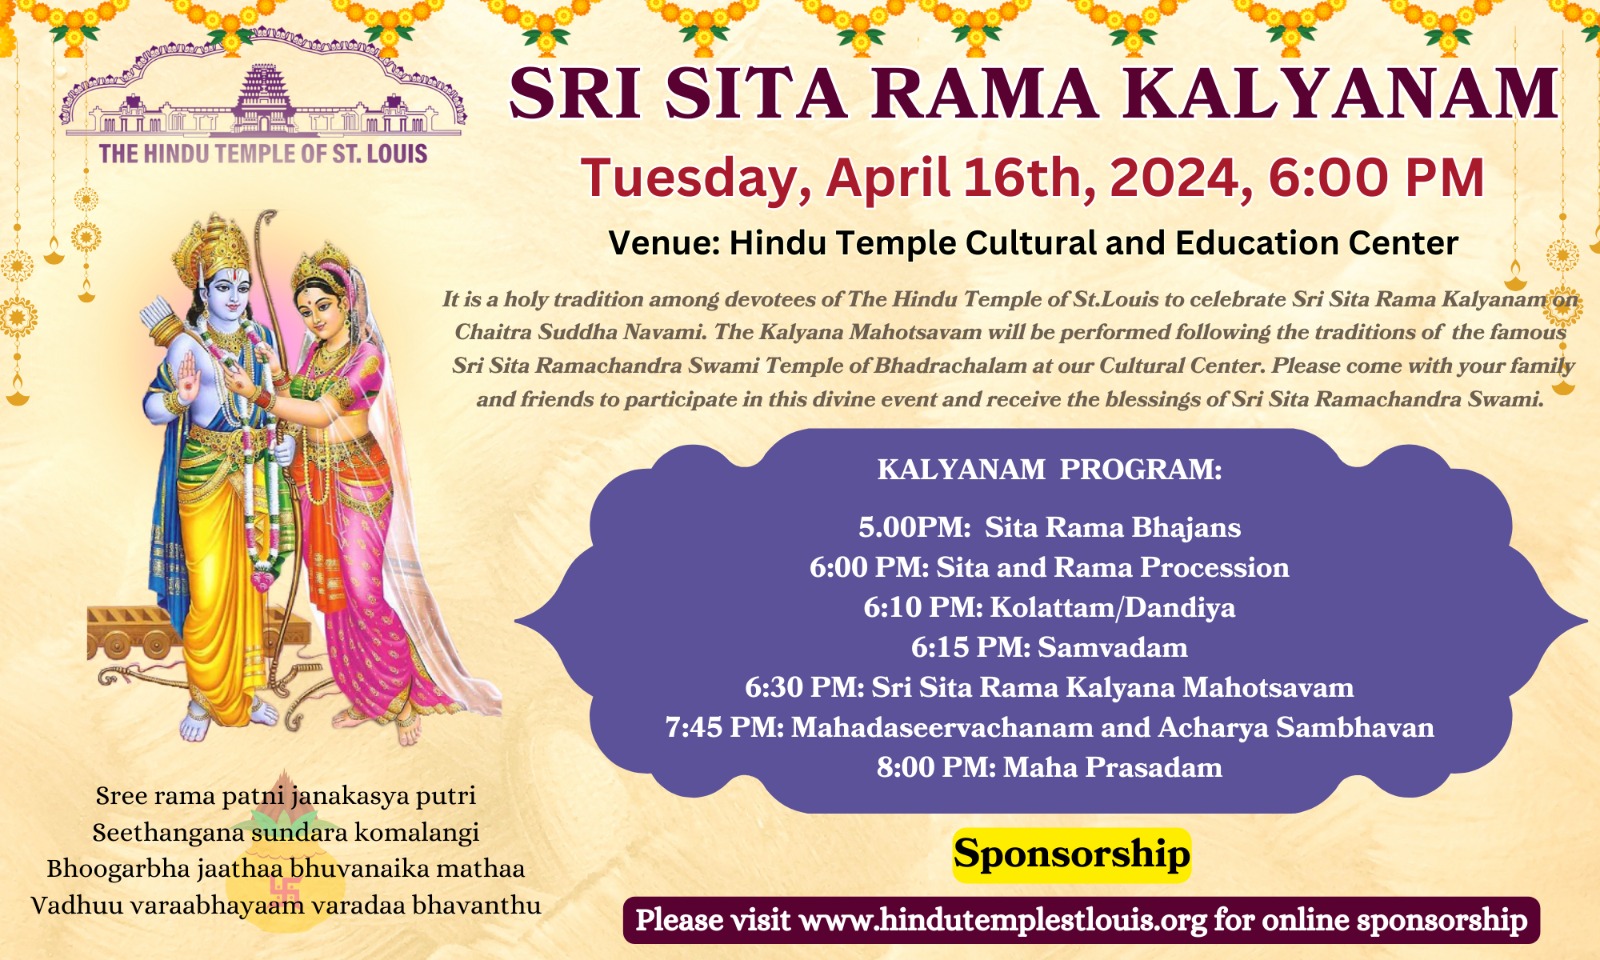 Sri Rama Navami - Seetha Rama Kalyanam